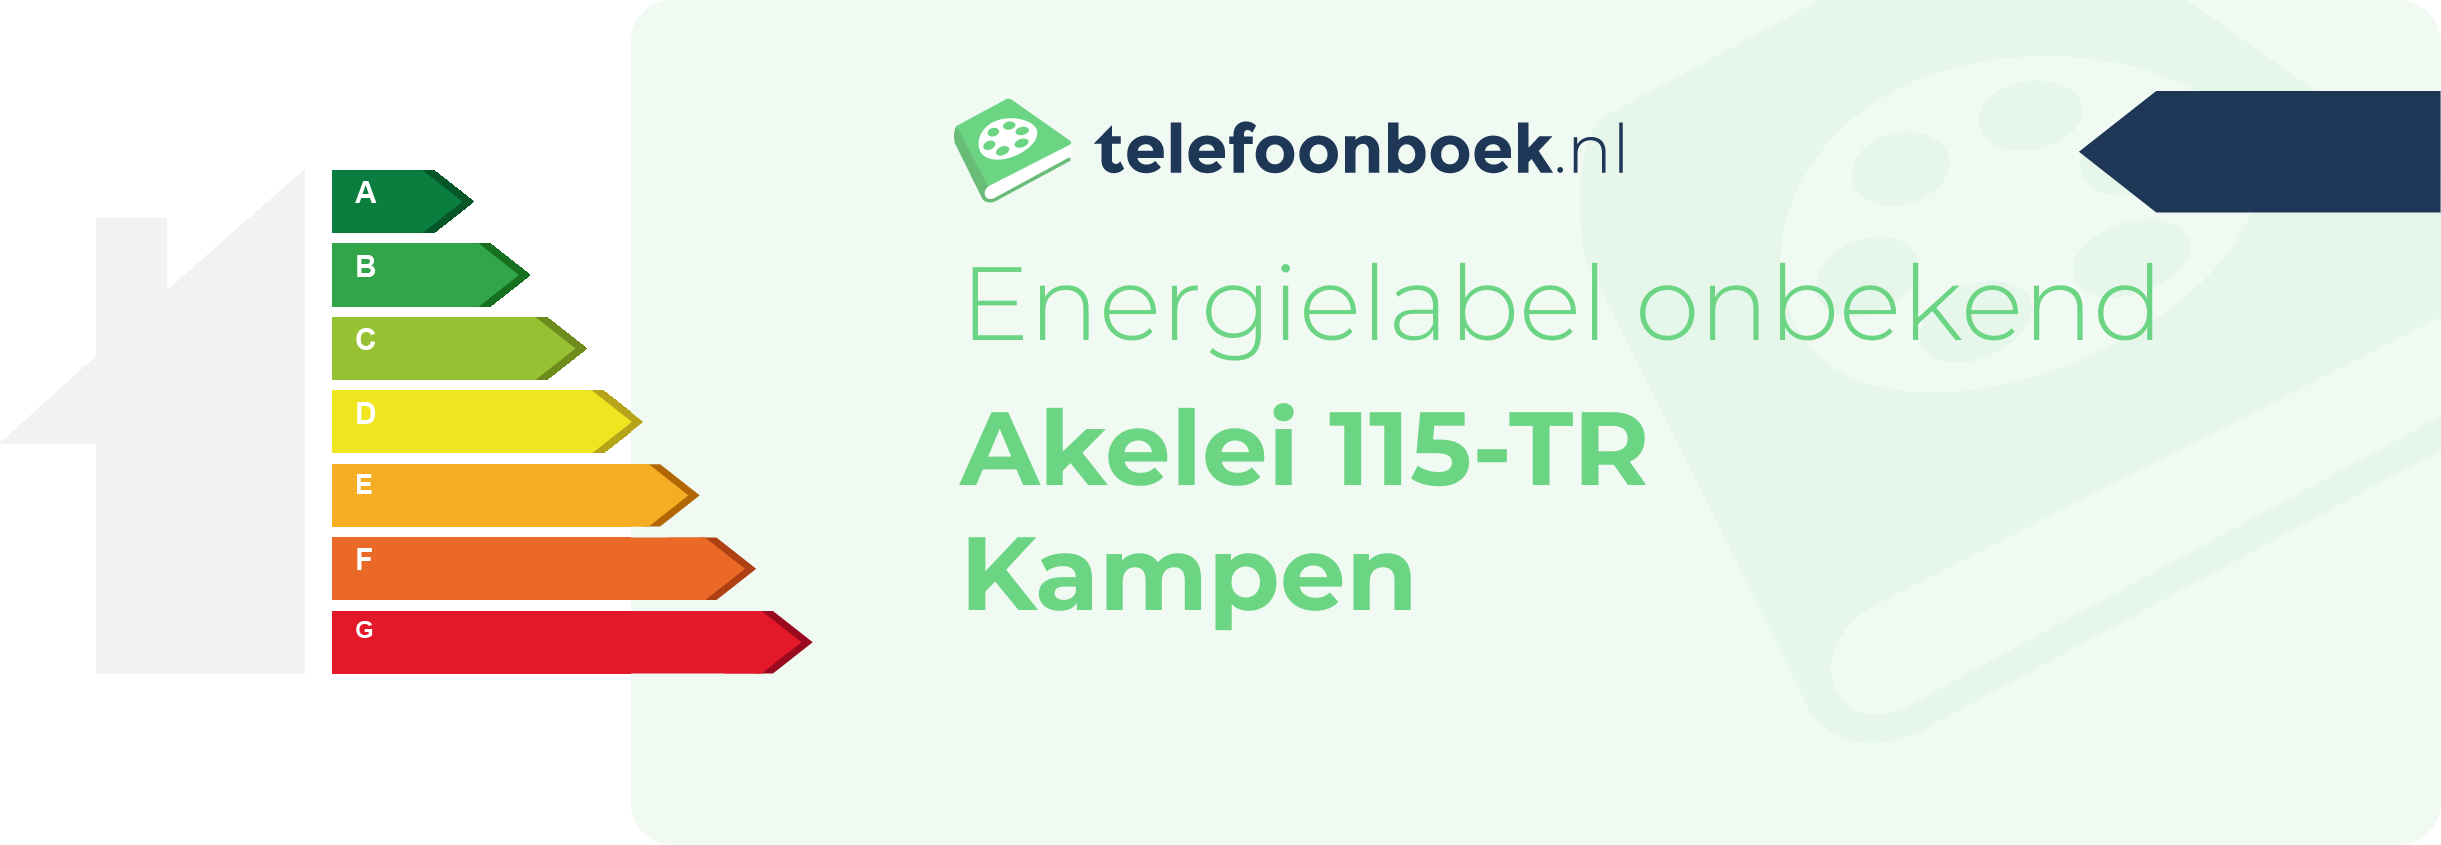 Energielabel Akelei 115-TR Kampen